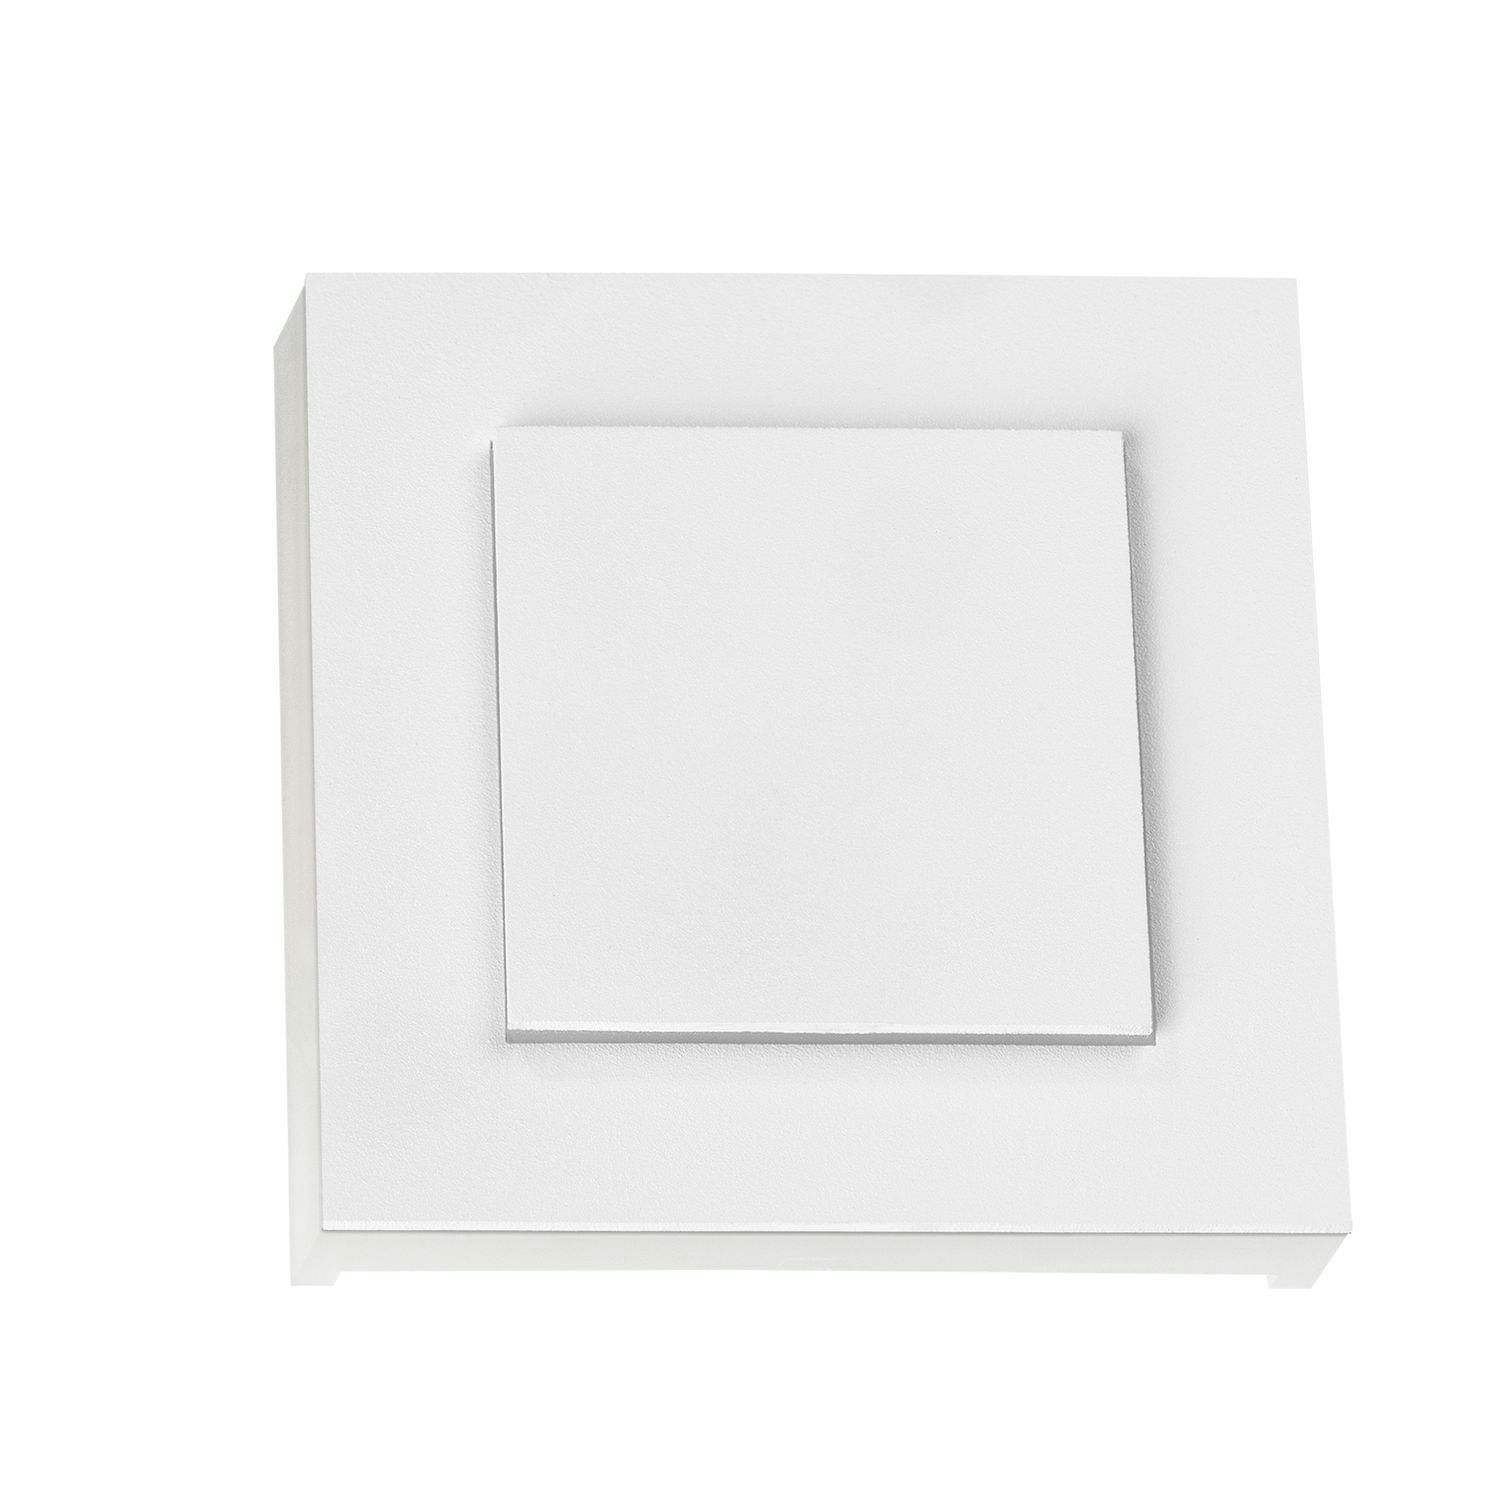 LEDANDO Treppenbeleuchtung weiß eckig in Einbaustrahler Schalterd LED / LED DUPLEX Wifi für weiss